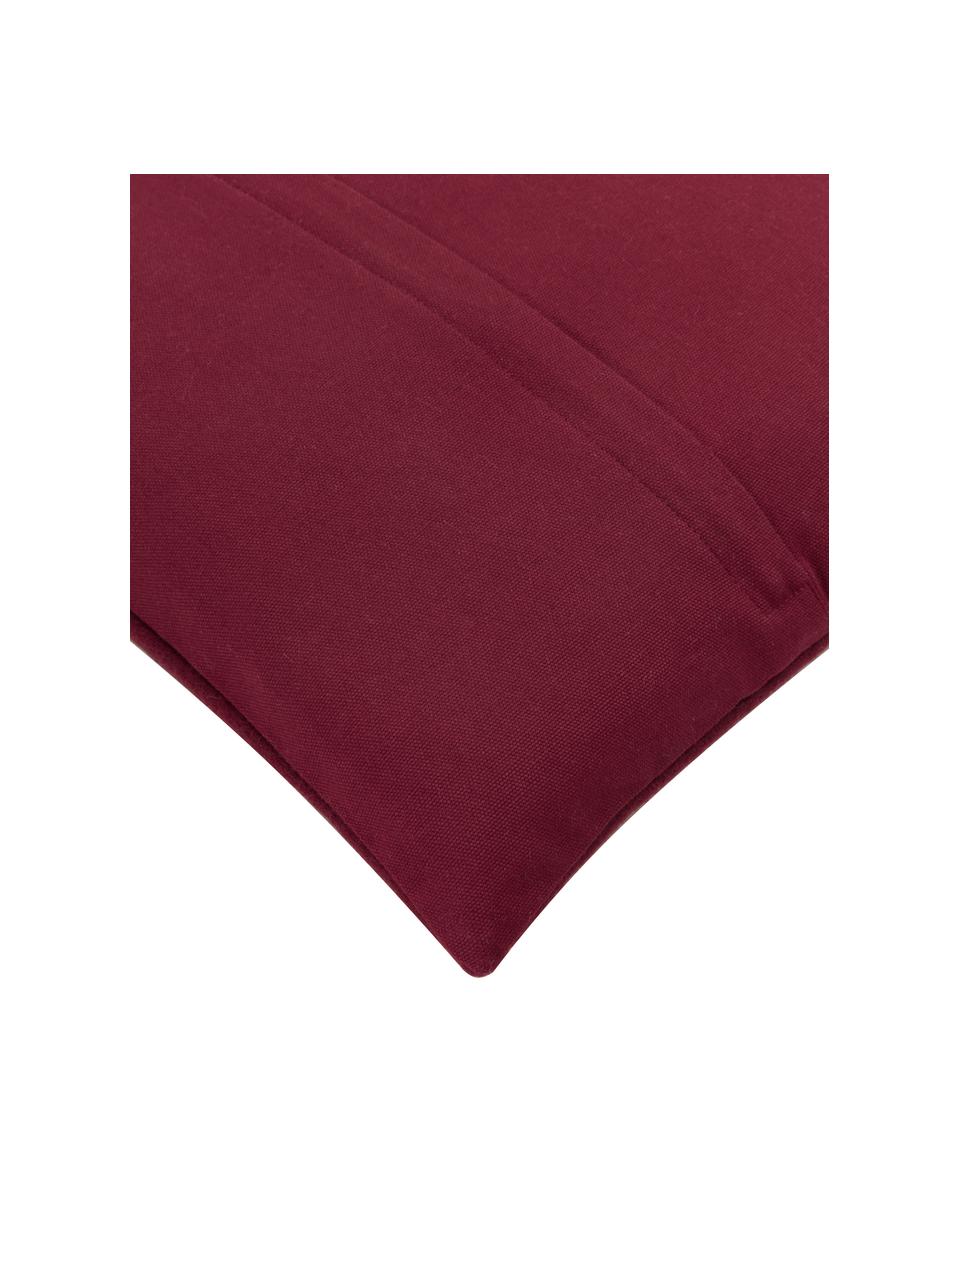 Federa arredo ricamata color rosso Joy, Retro: 100% cotone, Rosso, bianco crema, Larg. 45 x Lung. 45 cm